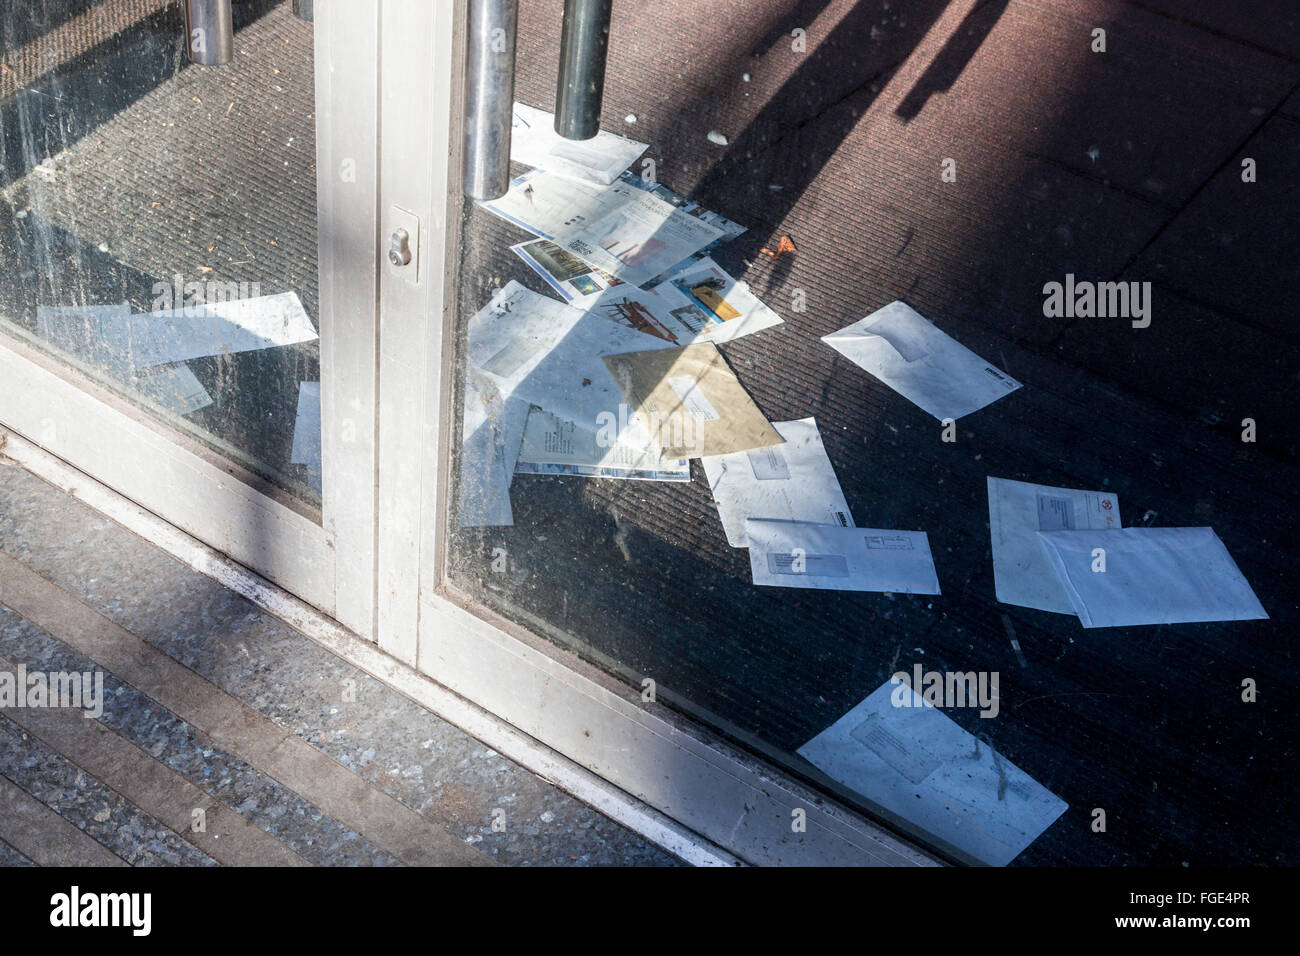 Viele ungeöffnete Mail auf dem Boden durch eine geschlossene Glastür Shop gesehen. Konzept einer Store, oder aus dem Geschäft gegangen, England, Großbritannien Stockfoto